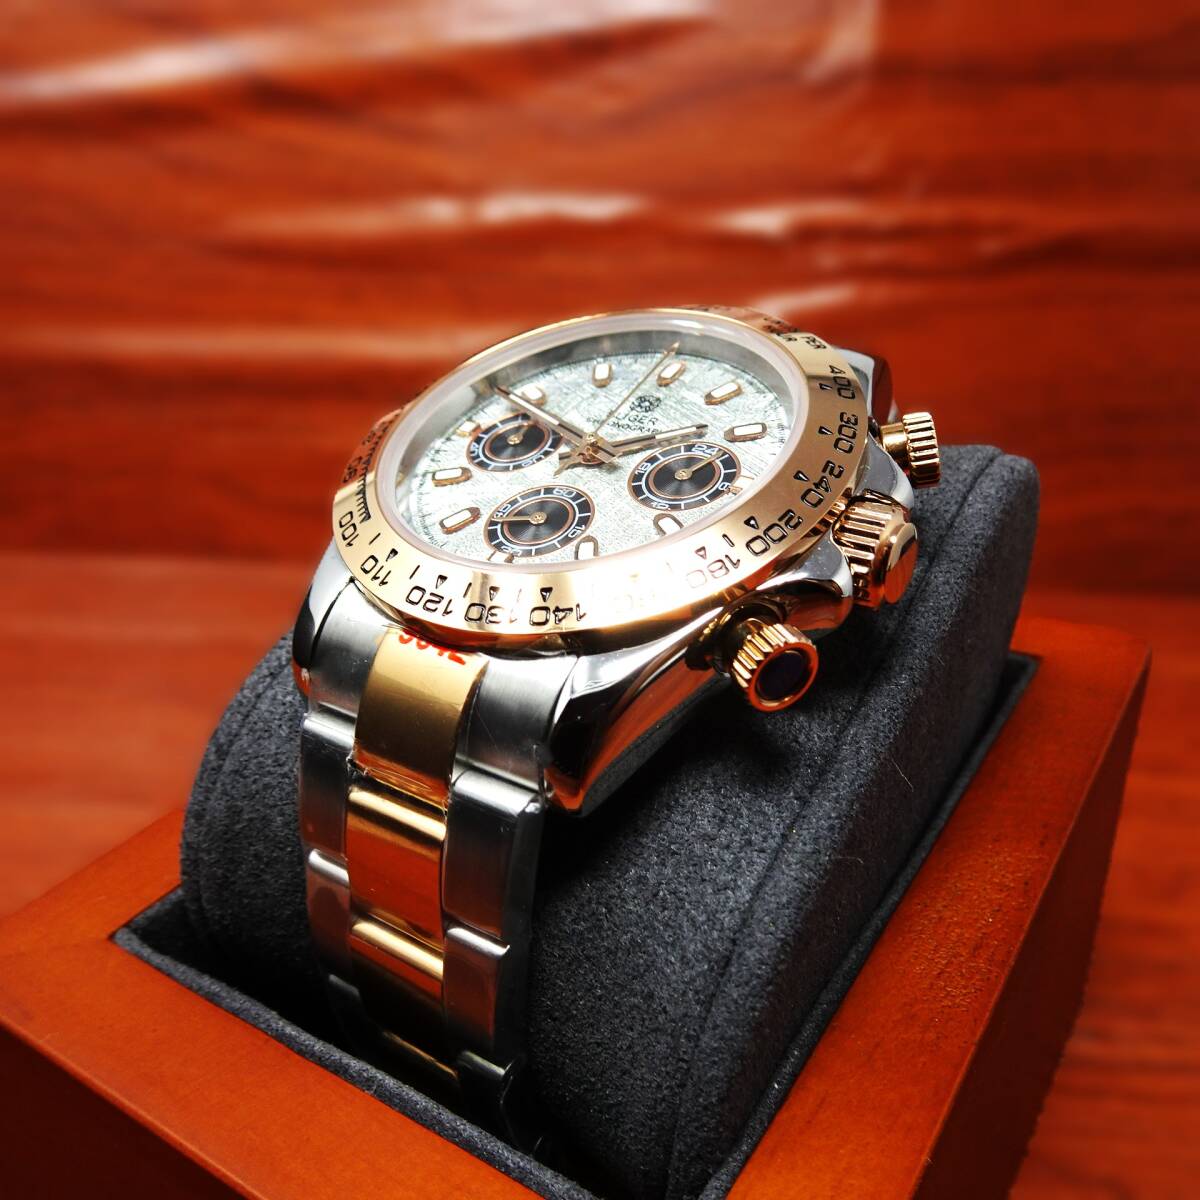 送料無料・新品・BLIGERブランド・メンズ・セイコー製VK63クロノグラフクオーツ式腕時計 ・オマージュウオッチ・ローズゴールドコンビ の画像4